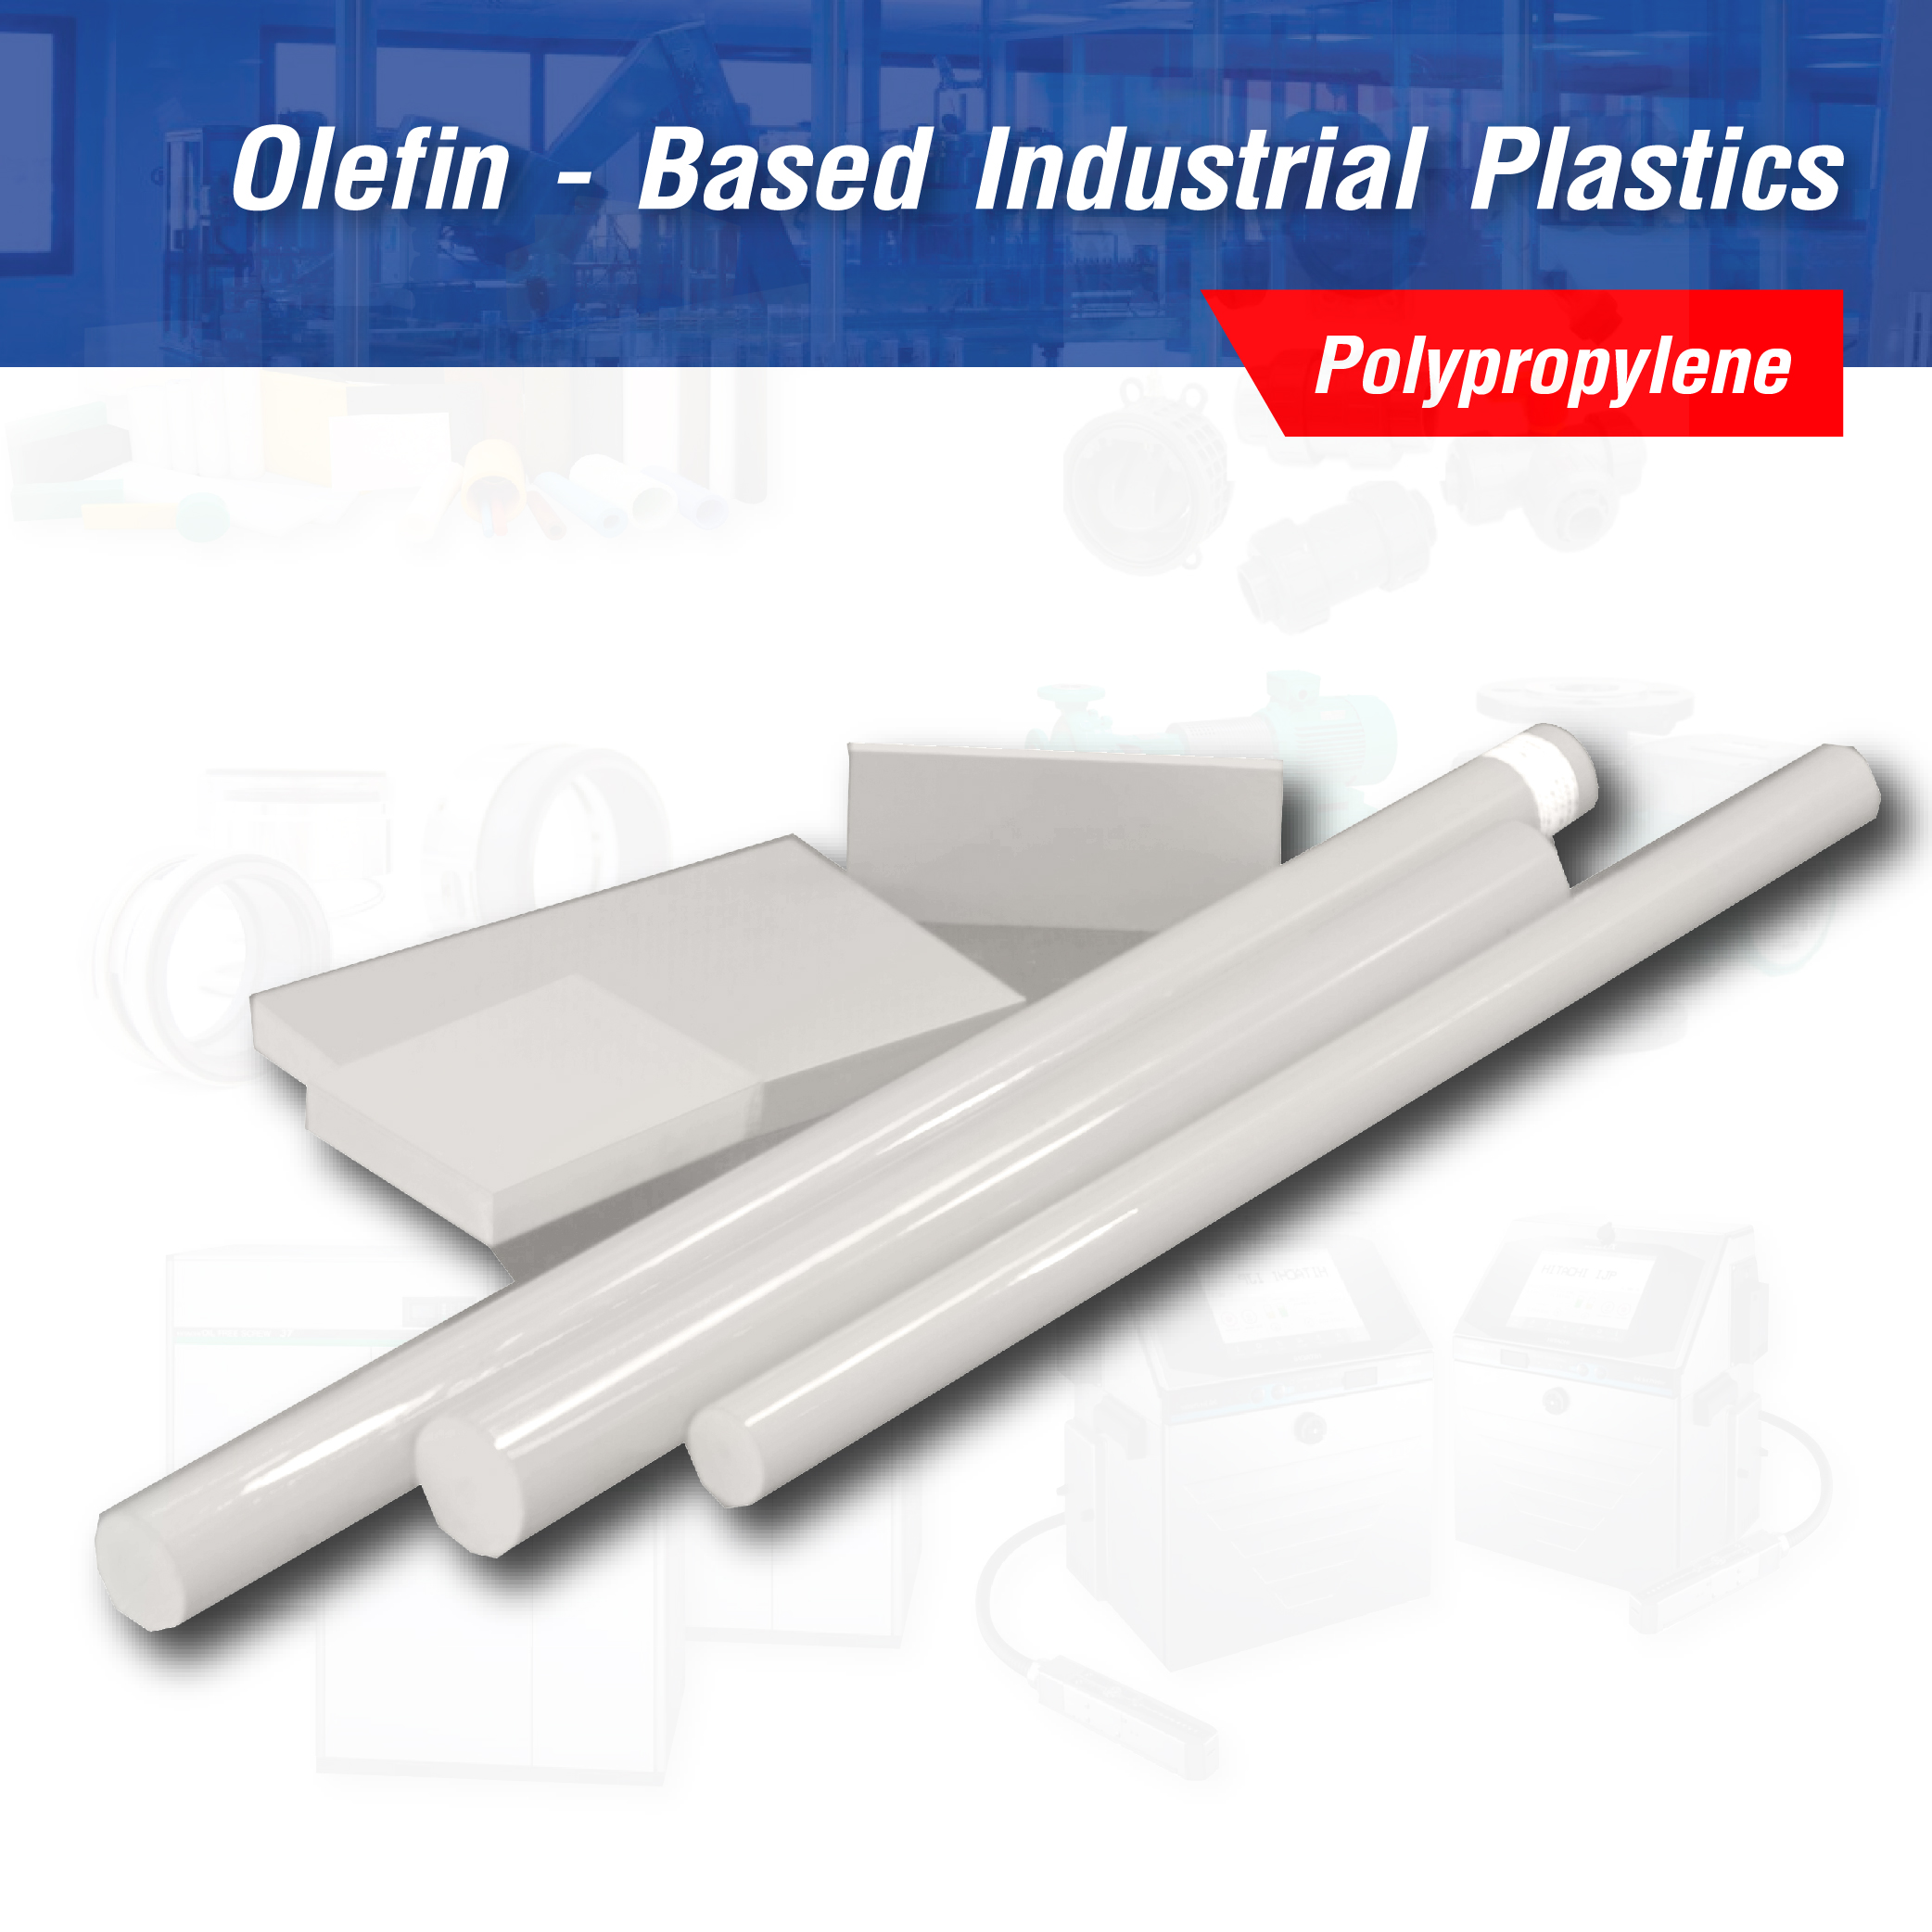 Olefin - Based Industrial Plastics